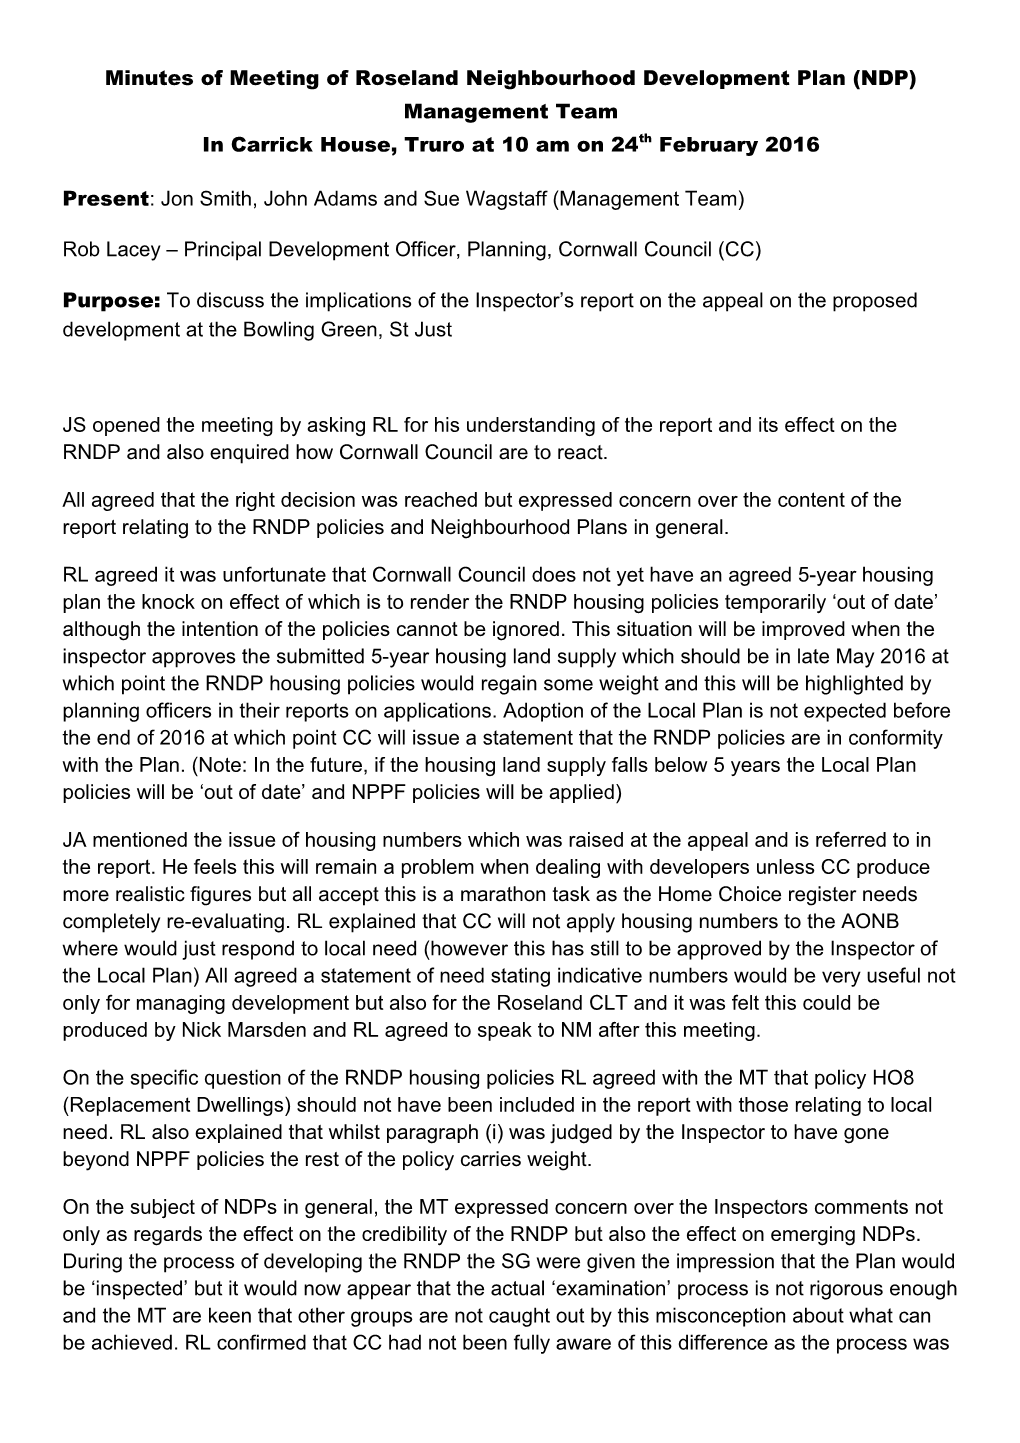 Minutes of Meeting of Roseland Neighbourhood Development Plan (NDP) Management Team